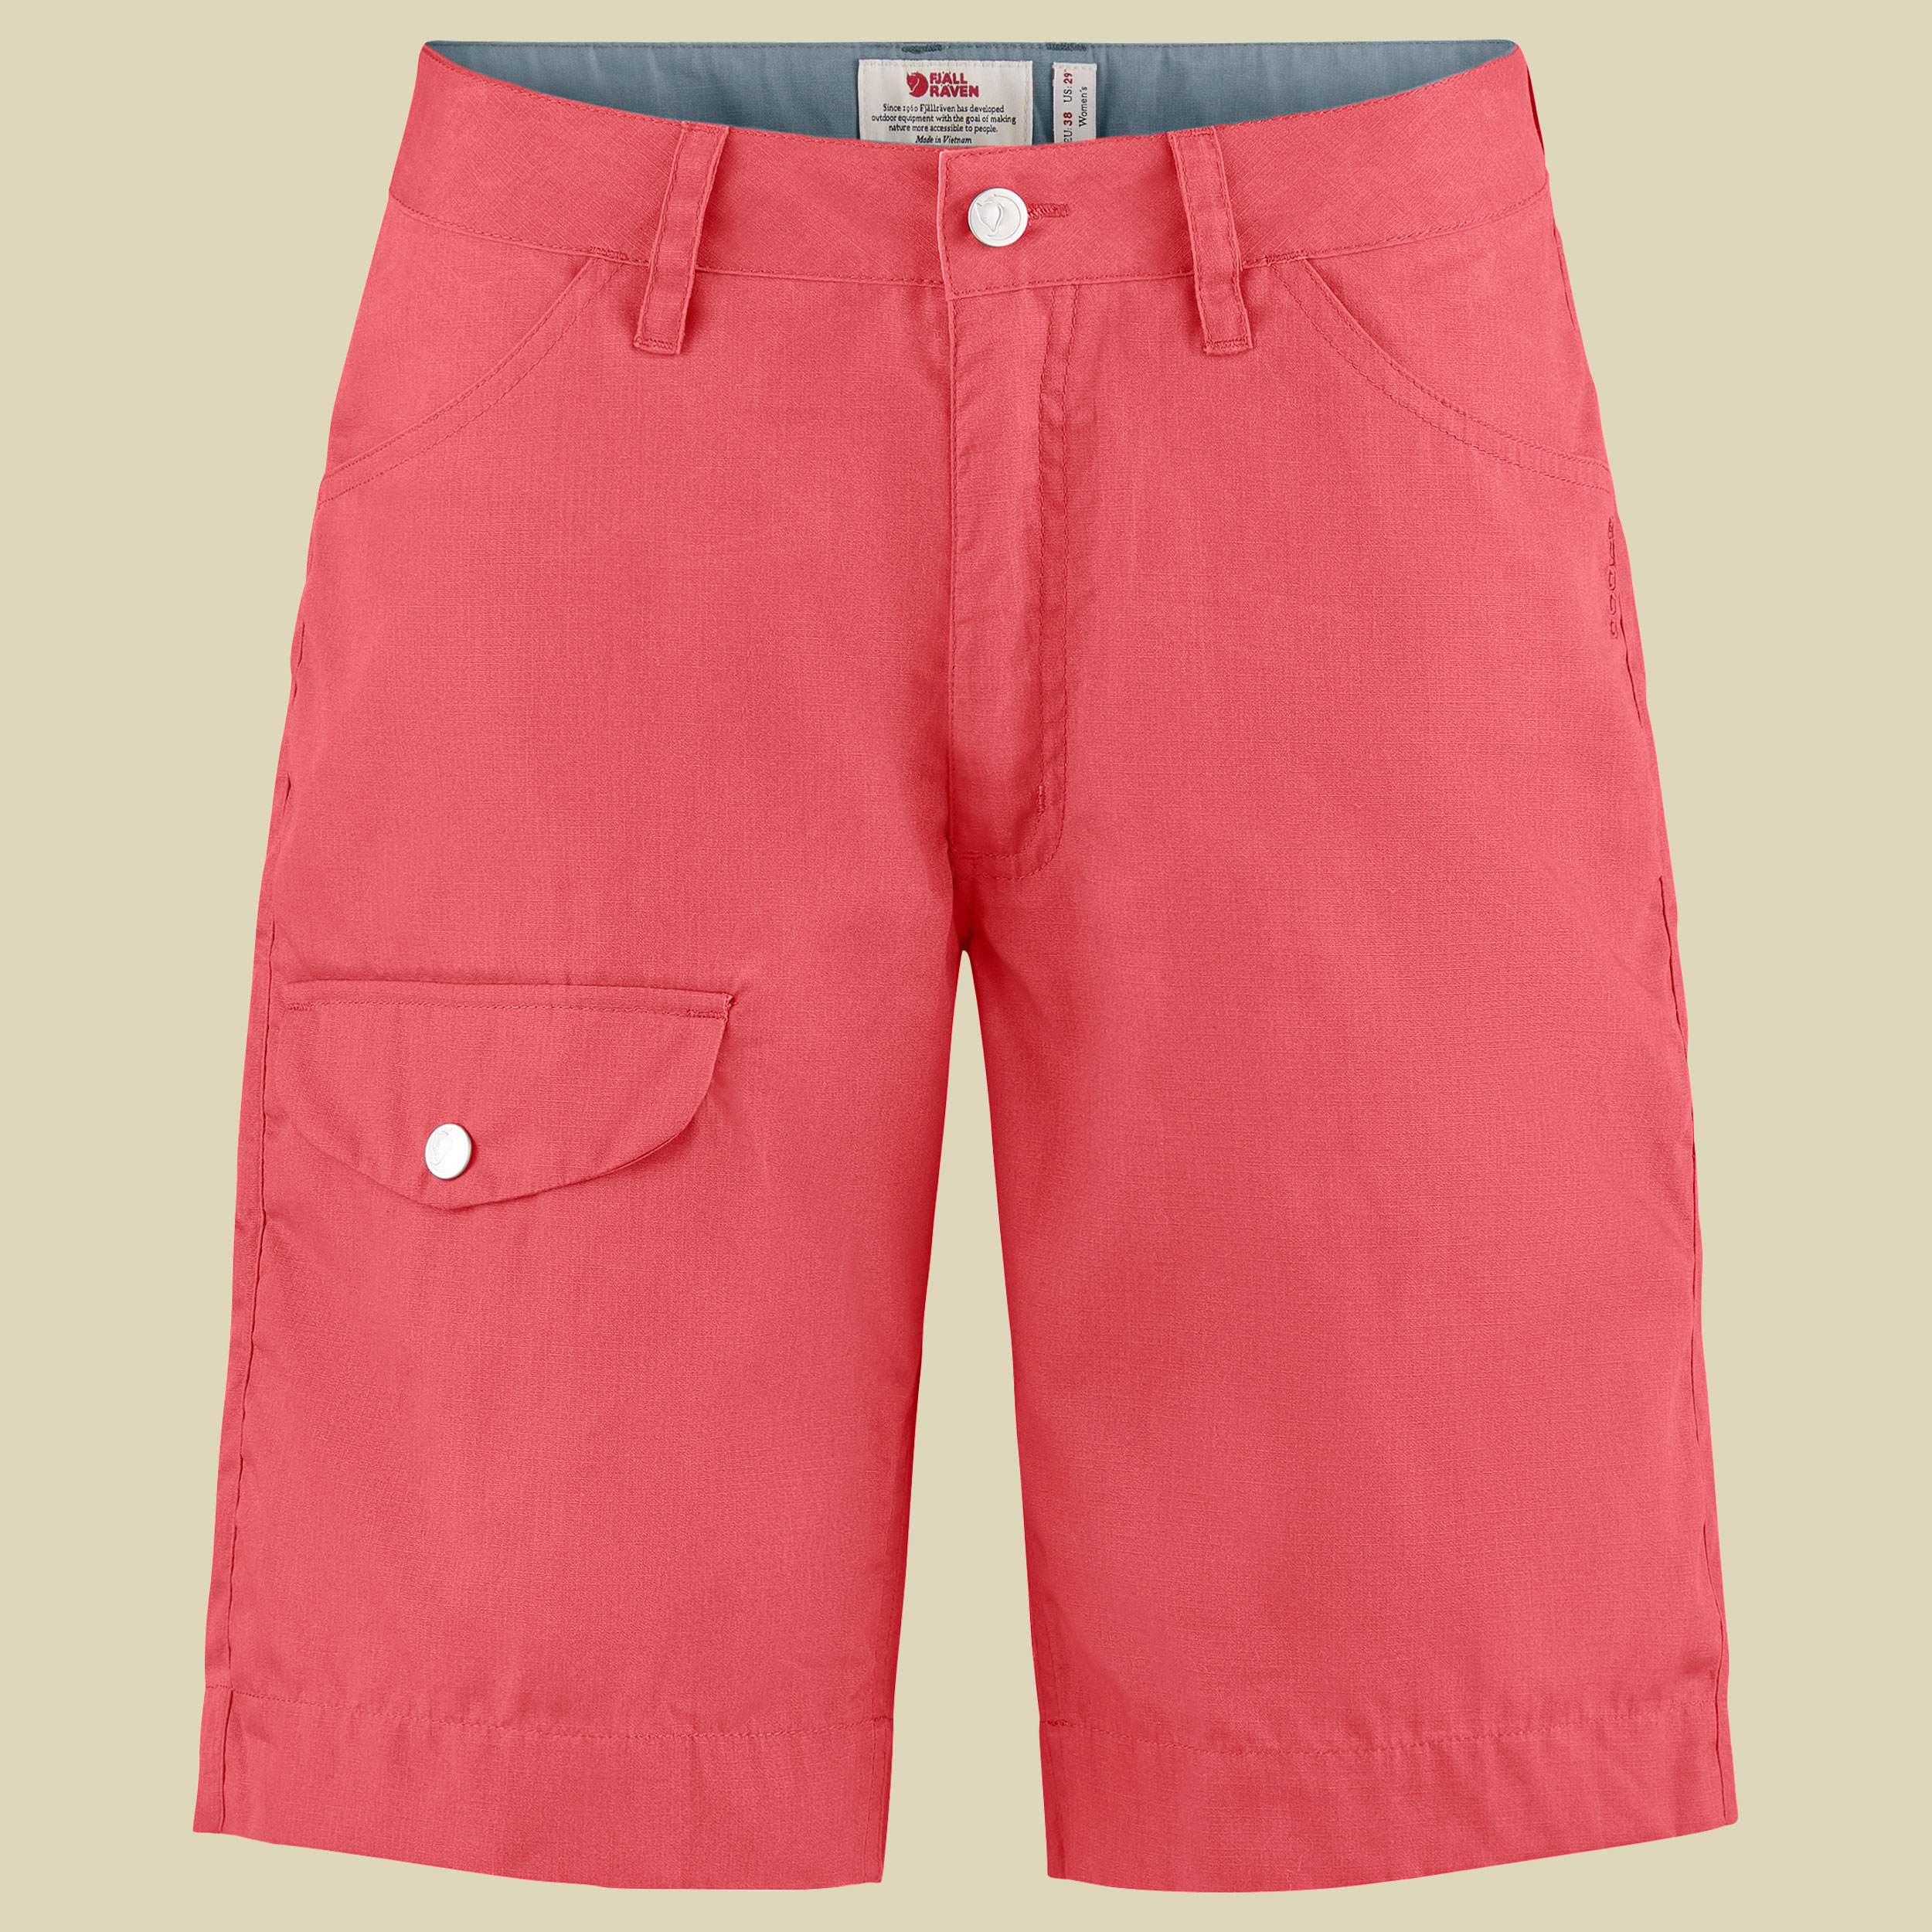 Greenland Shorts Women Größe 36 Farbe peach pink